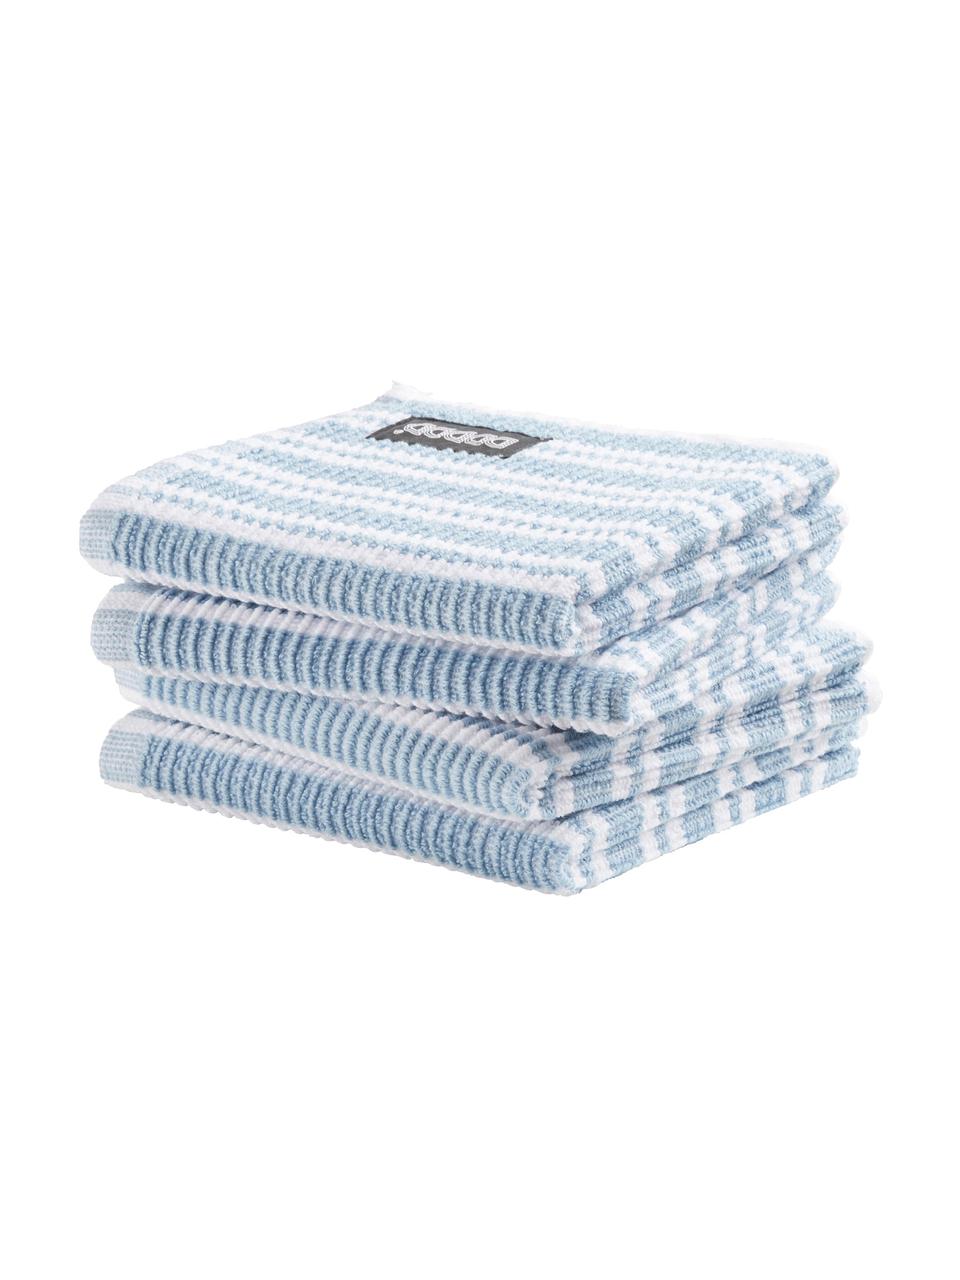 Reinigungstücher Basic Clean, 4 Stück, Baumwolle, Blau, Weiß, B 30 x L 30 cm